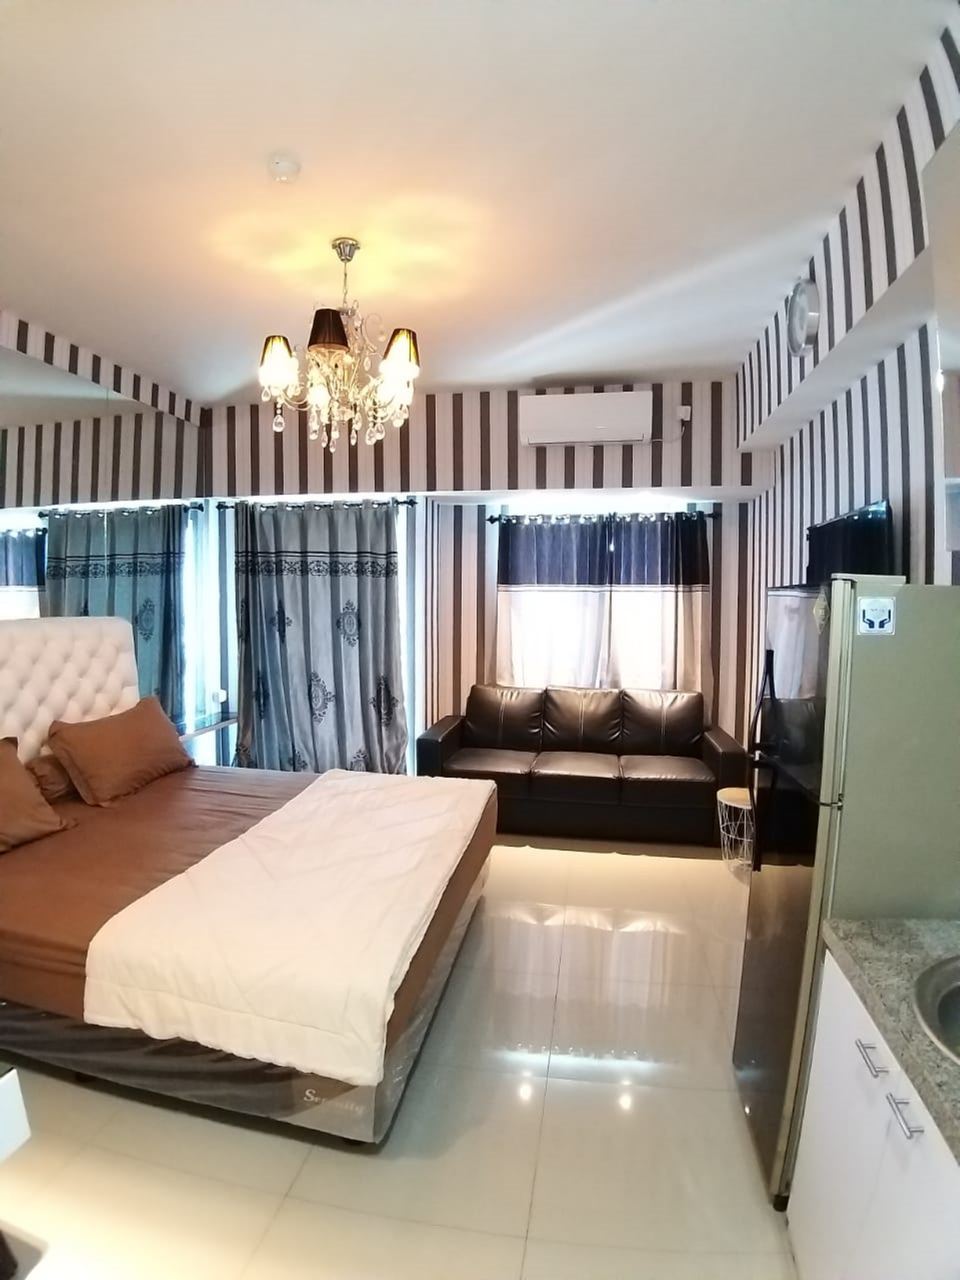 Bedroom 1, Tanglin by Miracle, Surabaya